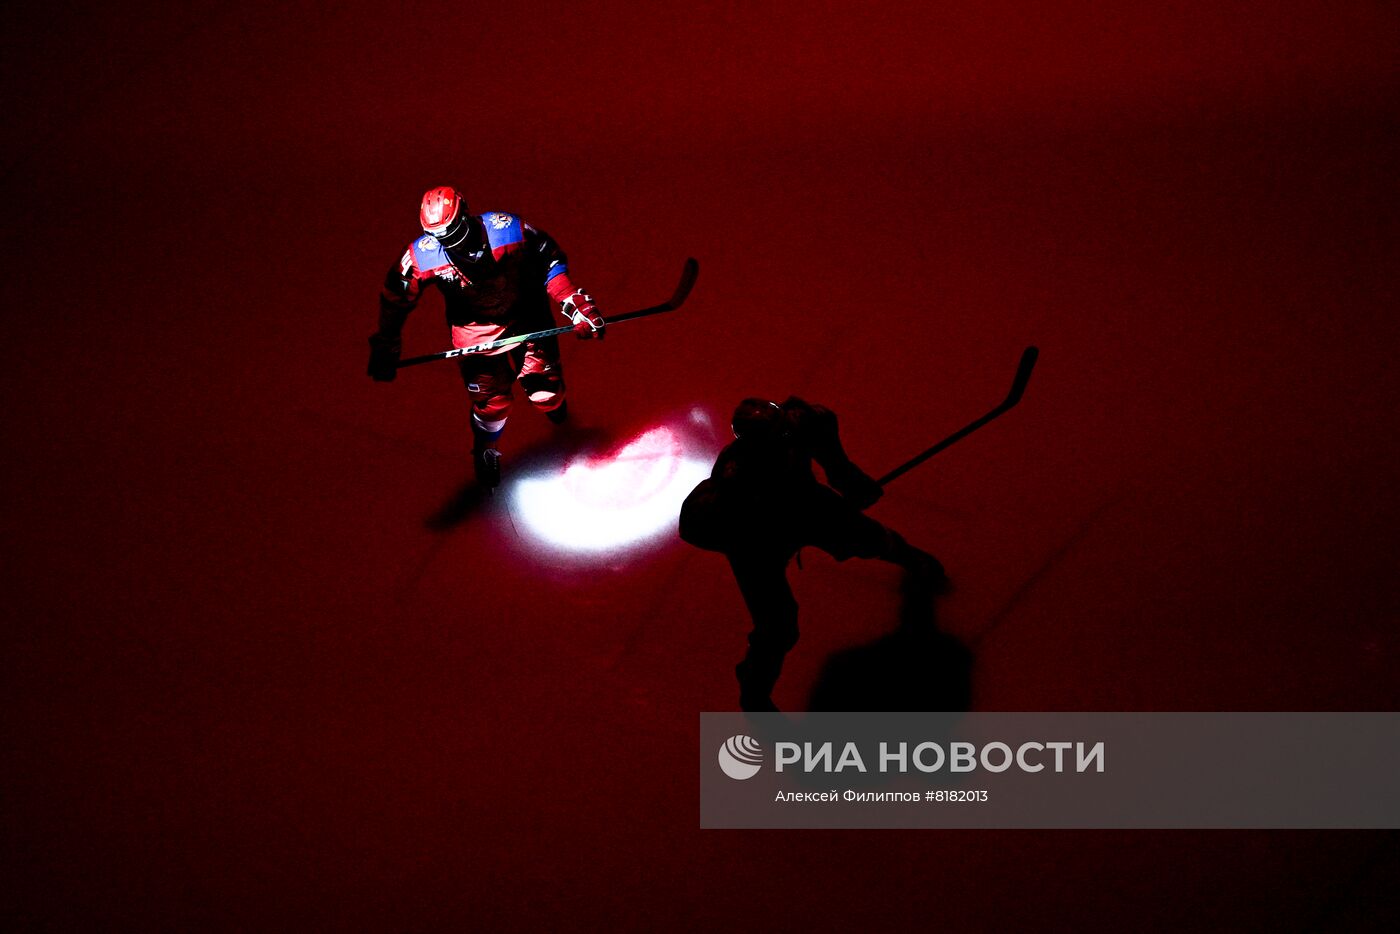 Хоккей. Выставочный матч. Россия - Белоруссия